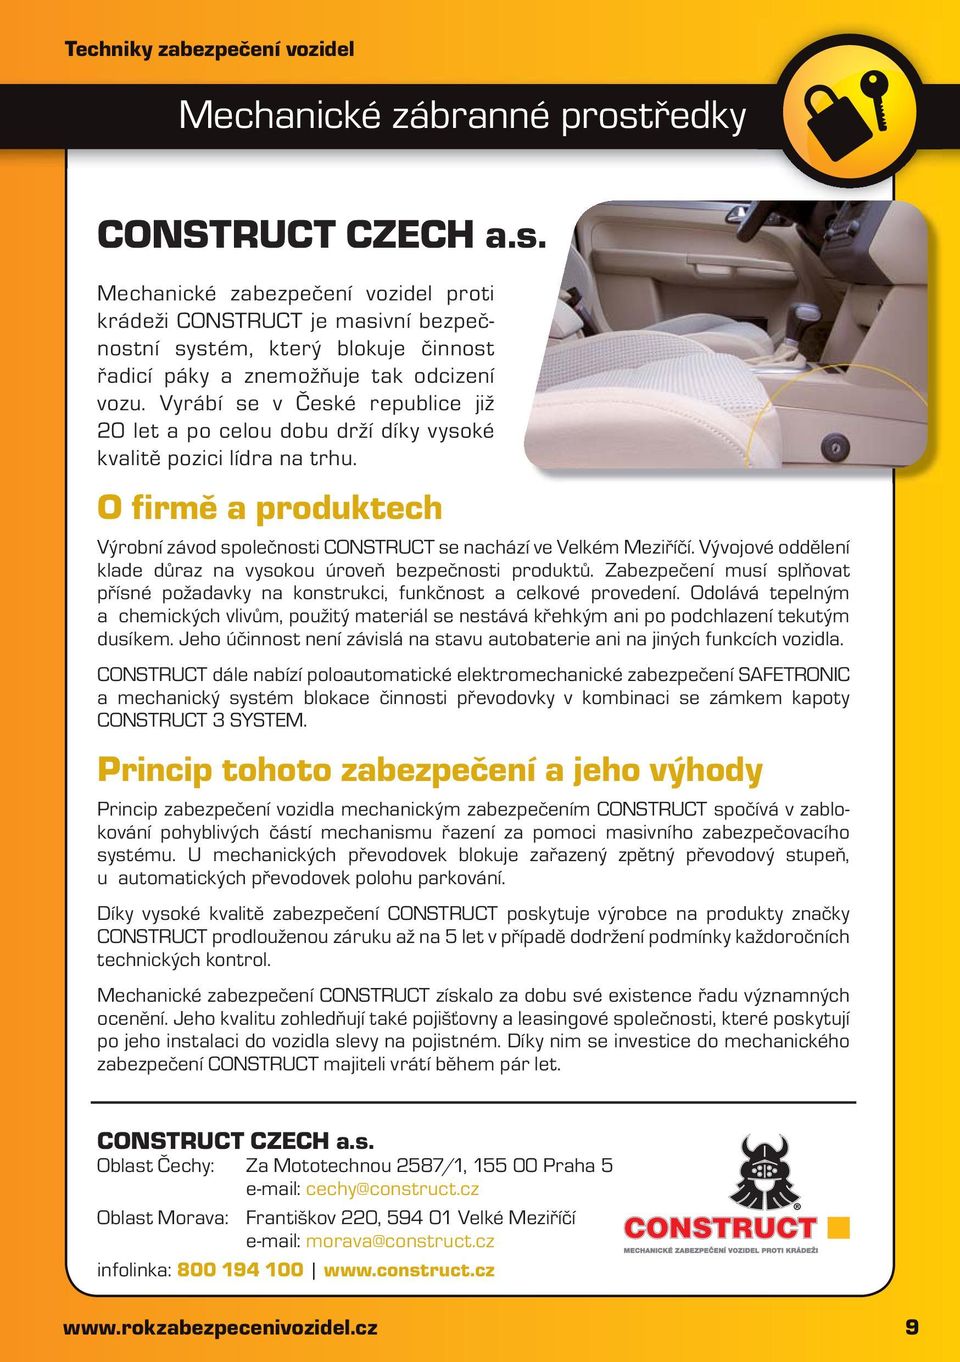 Vyrábí se v České republice již 20 let a po celou dobu drží díky vysoké kvalitě pozici lídra na trhu. O firmě a produktech Výrobní závod společnosti CONSTRUCT se nachází ve Velkém Meziříčí.